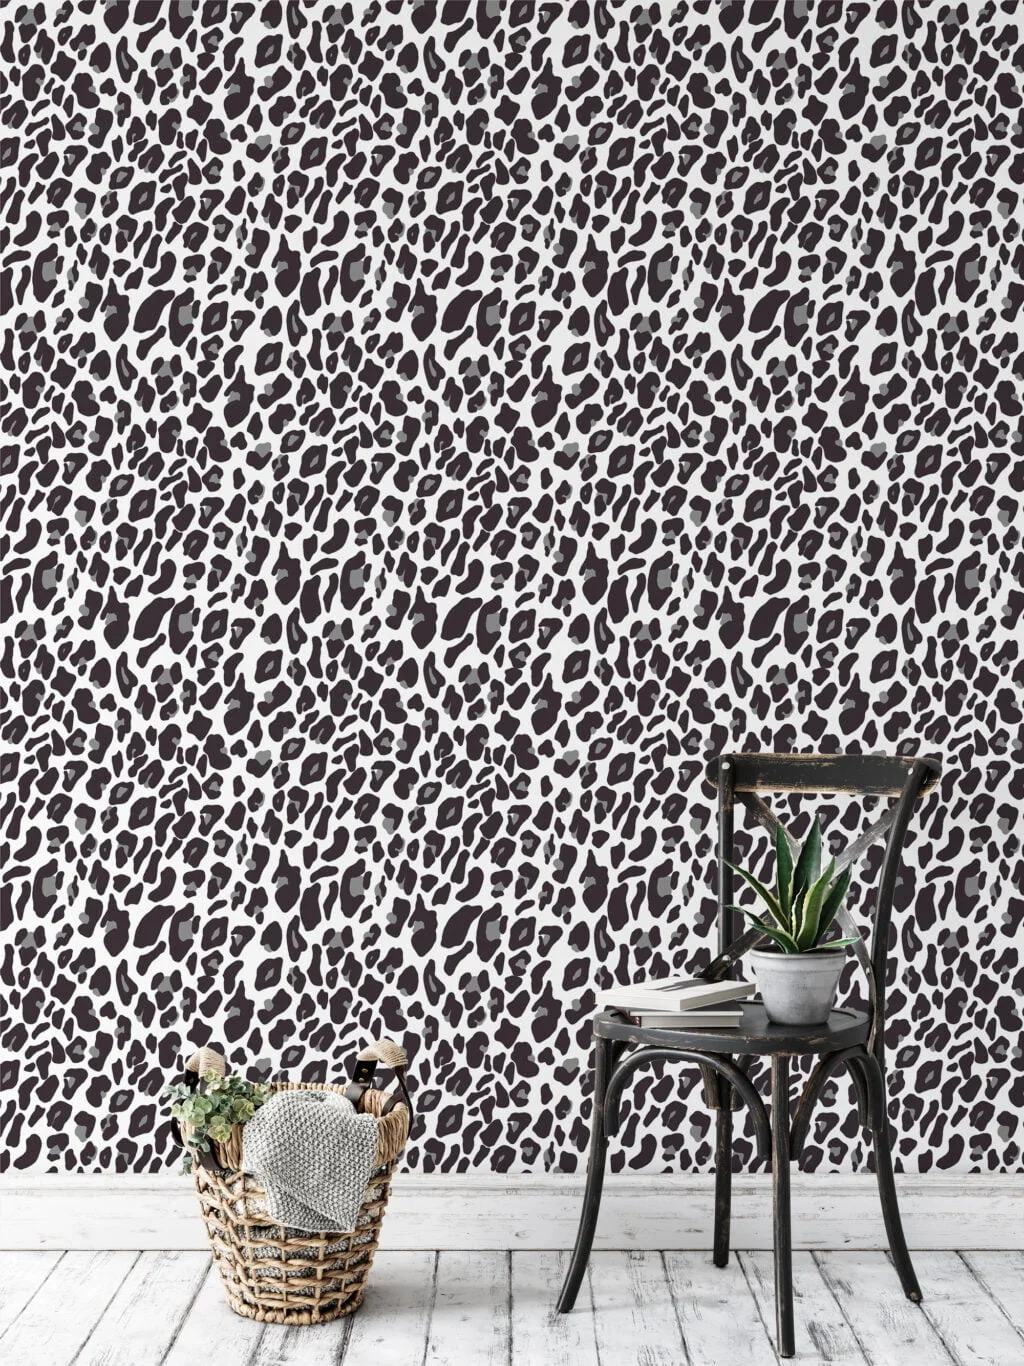 White Grey Leopard Jaguar Skin Pattern Illustration Wallpaper, Sleek Monochrome Leopard Spot Peel & Stick Wall Mural